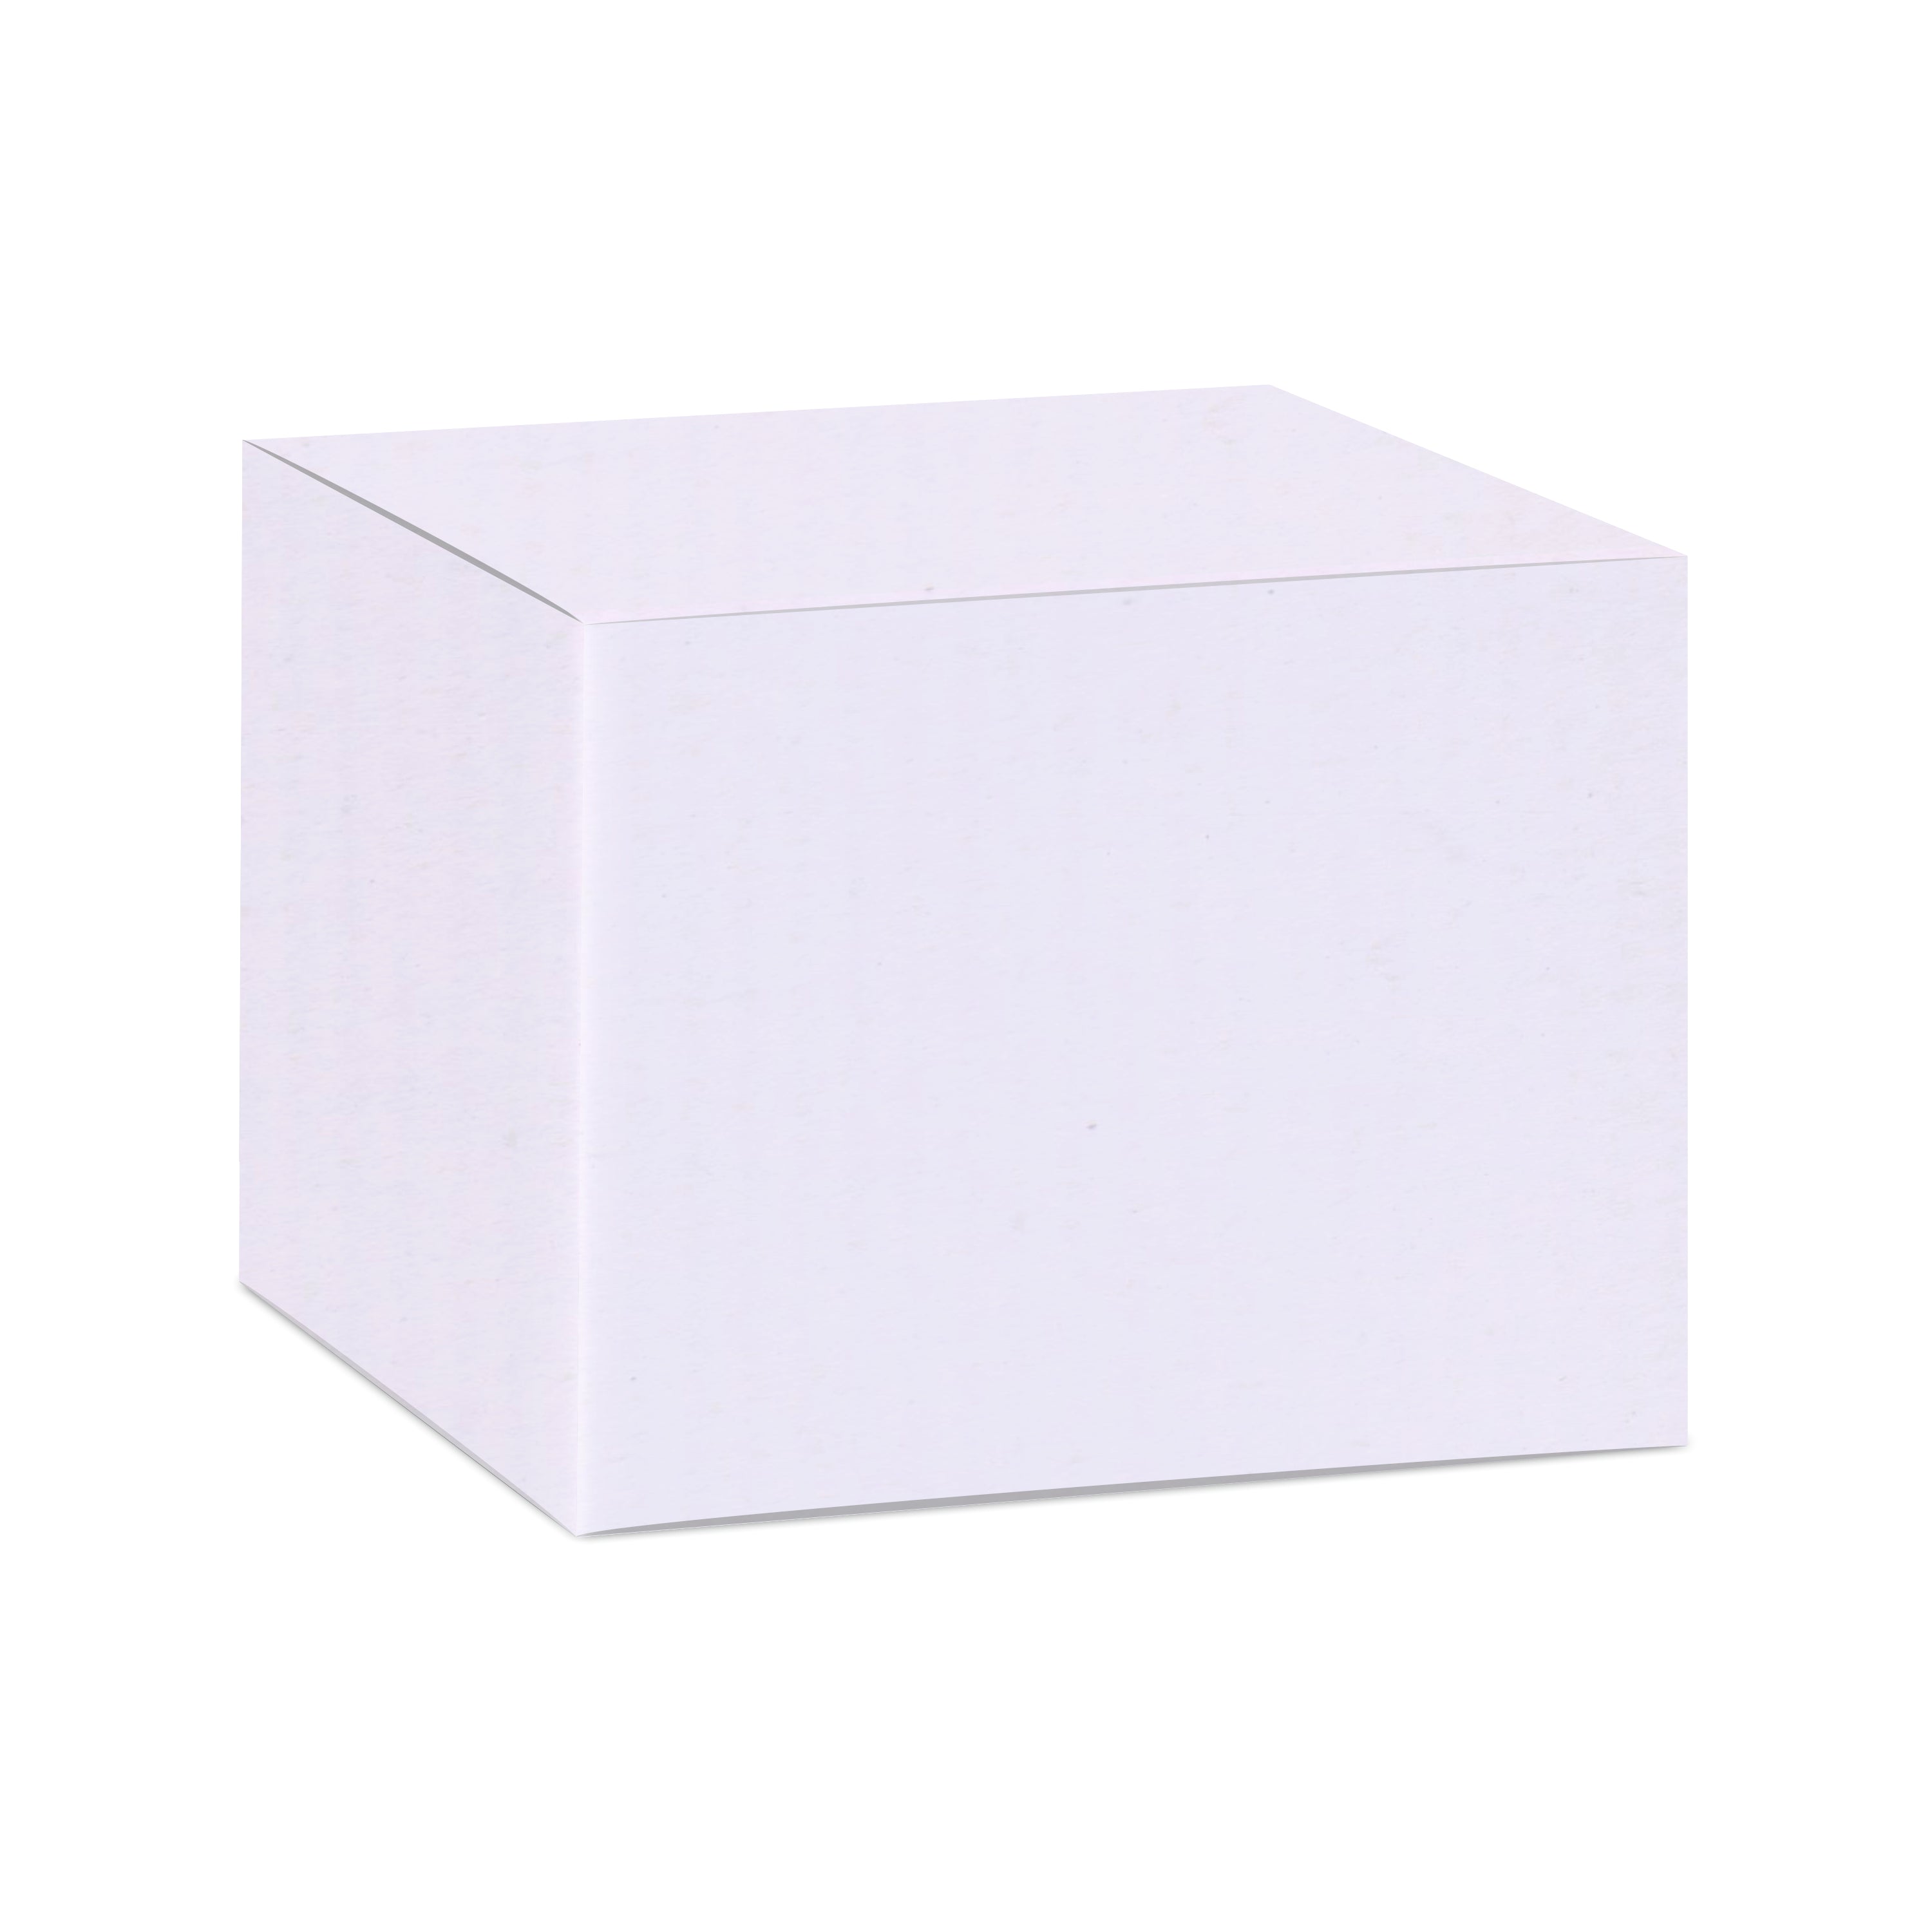 Zenvista Premium White Corrugated Box |10 x 10 x 10 cm | Pack of 50